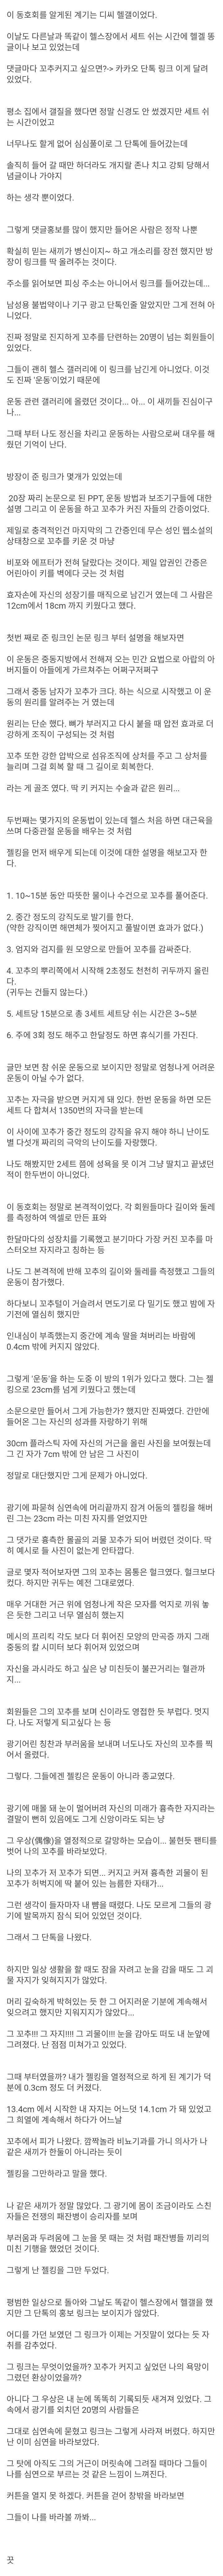 ㄲㅊ커지는 운동 동호회에 가입한 썰::짱공유-명예의 쩐당